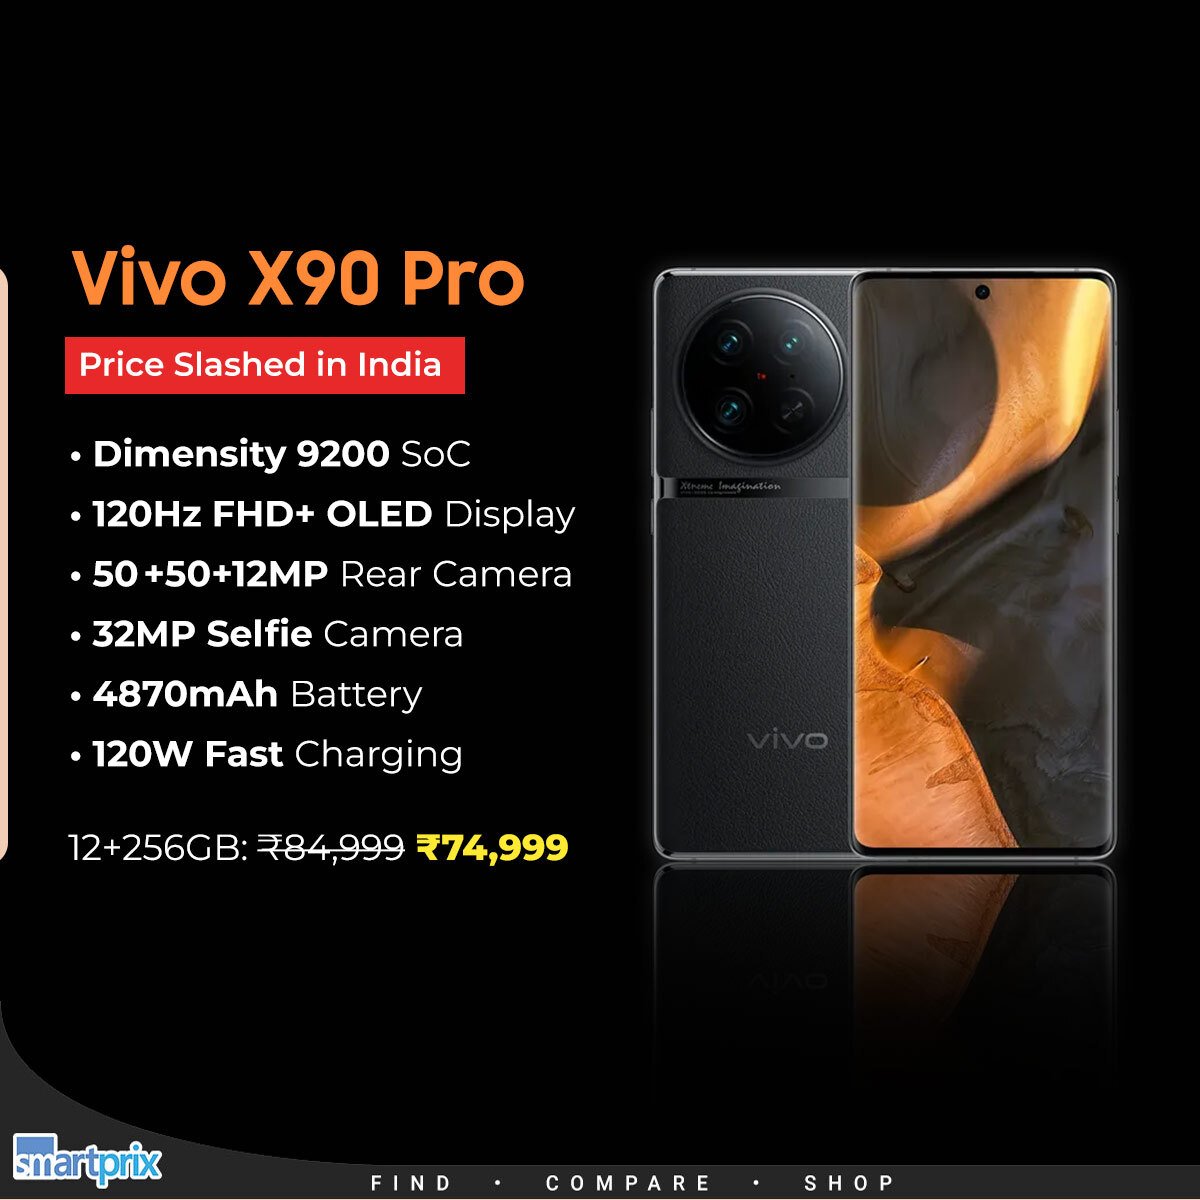 Vivo X90 Pro gets a huge price cut of ₹10,000 in India smpx.to/j35VAR

#VivoX90Pro #Vivo #Pricecut